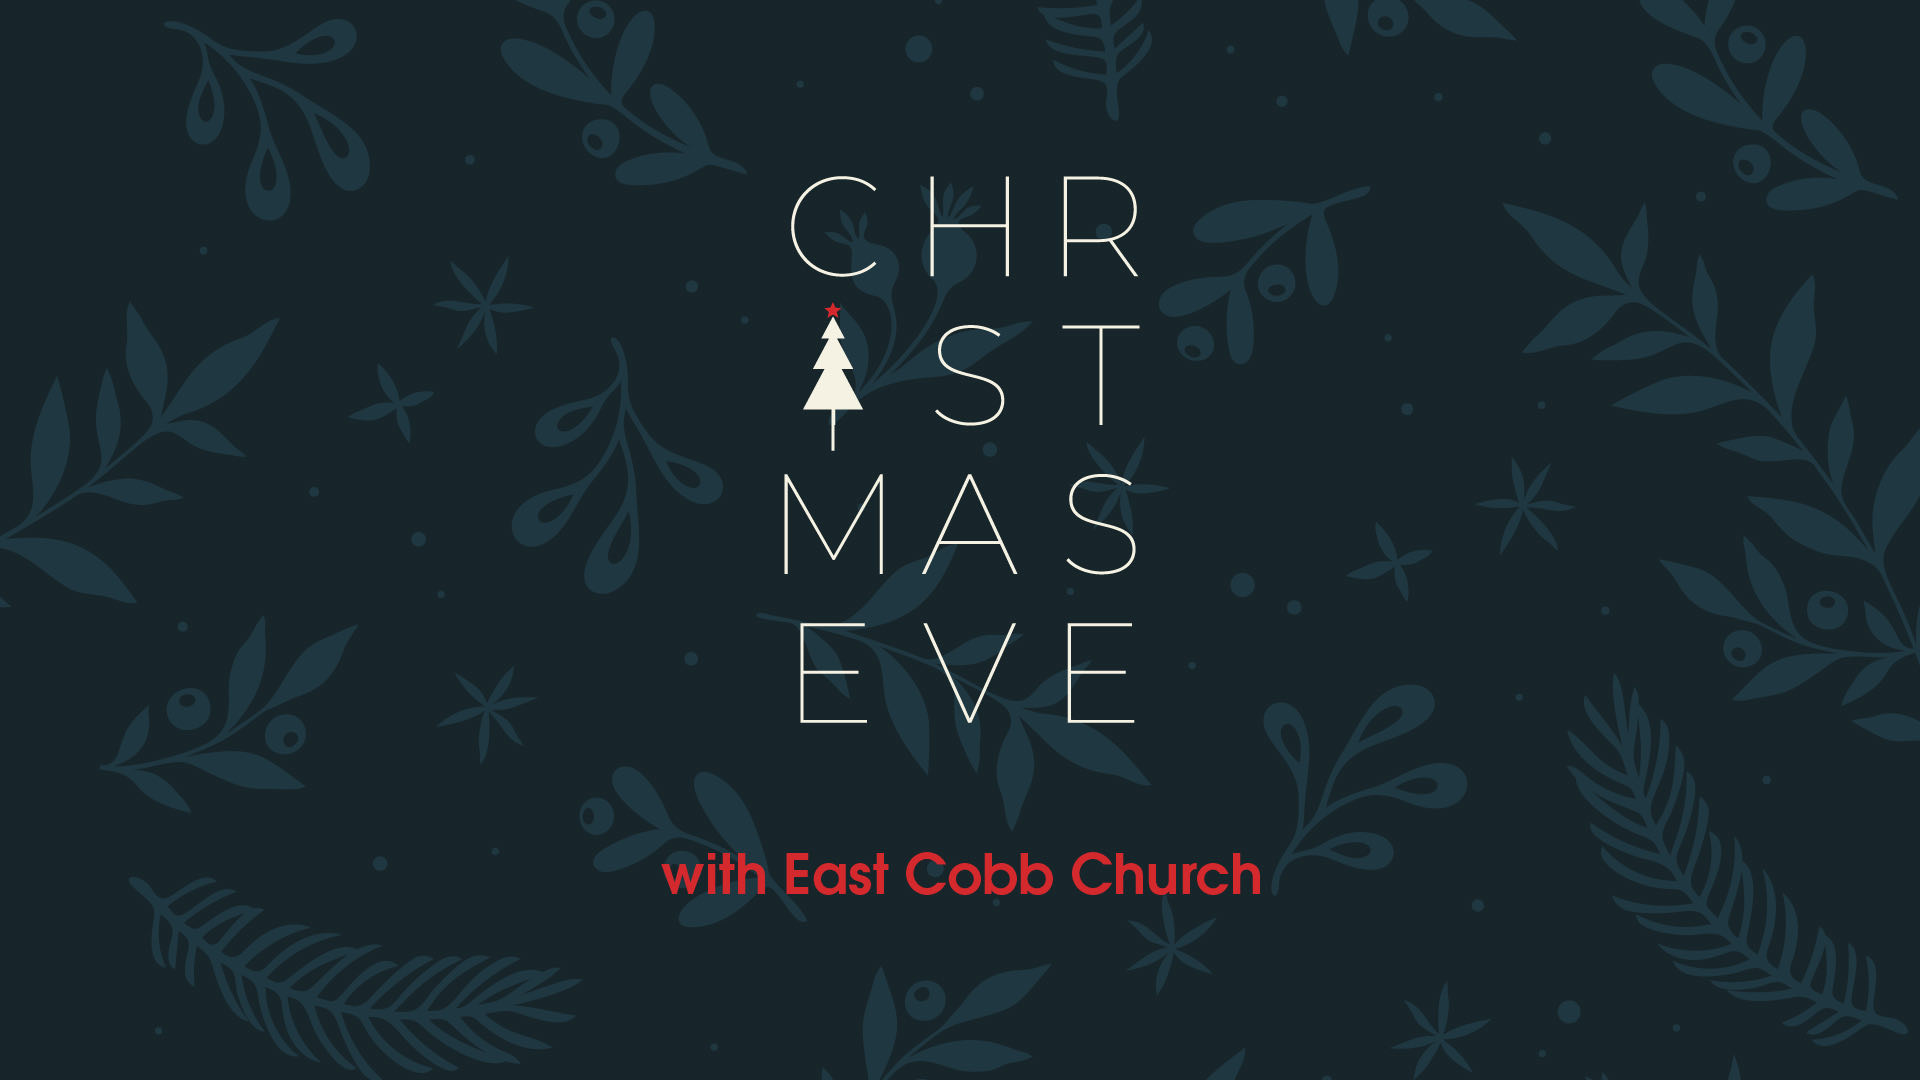 Christmas Eve with East Cobb Church